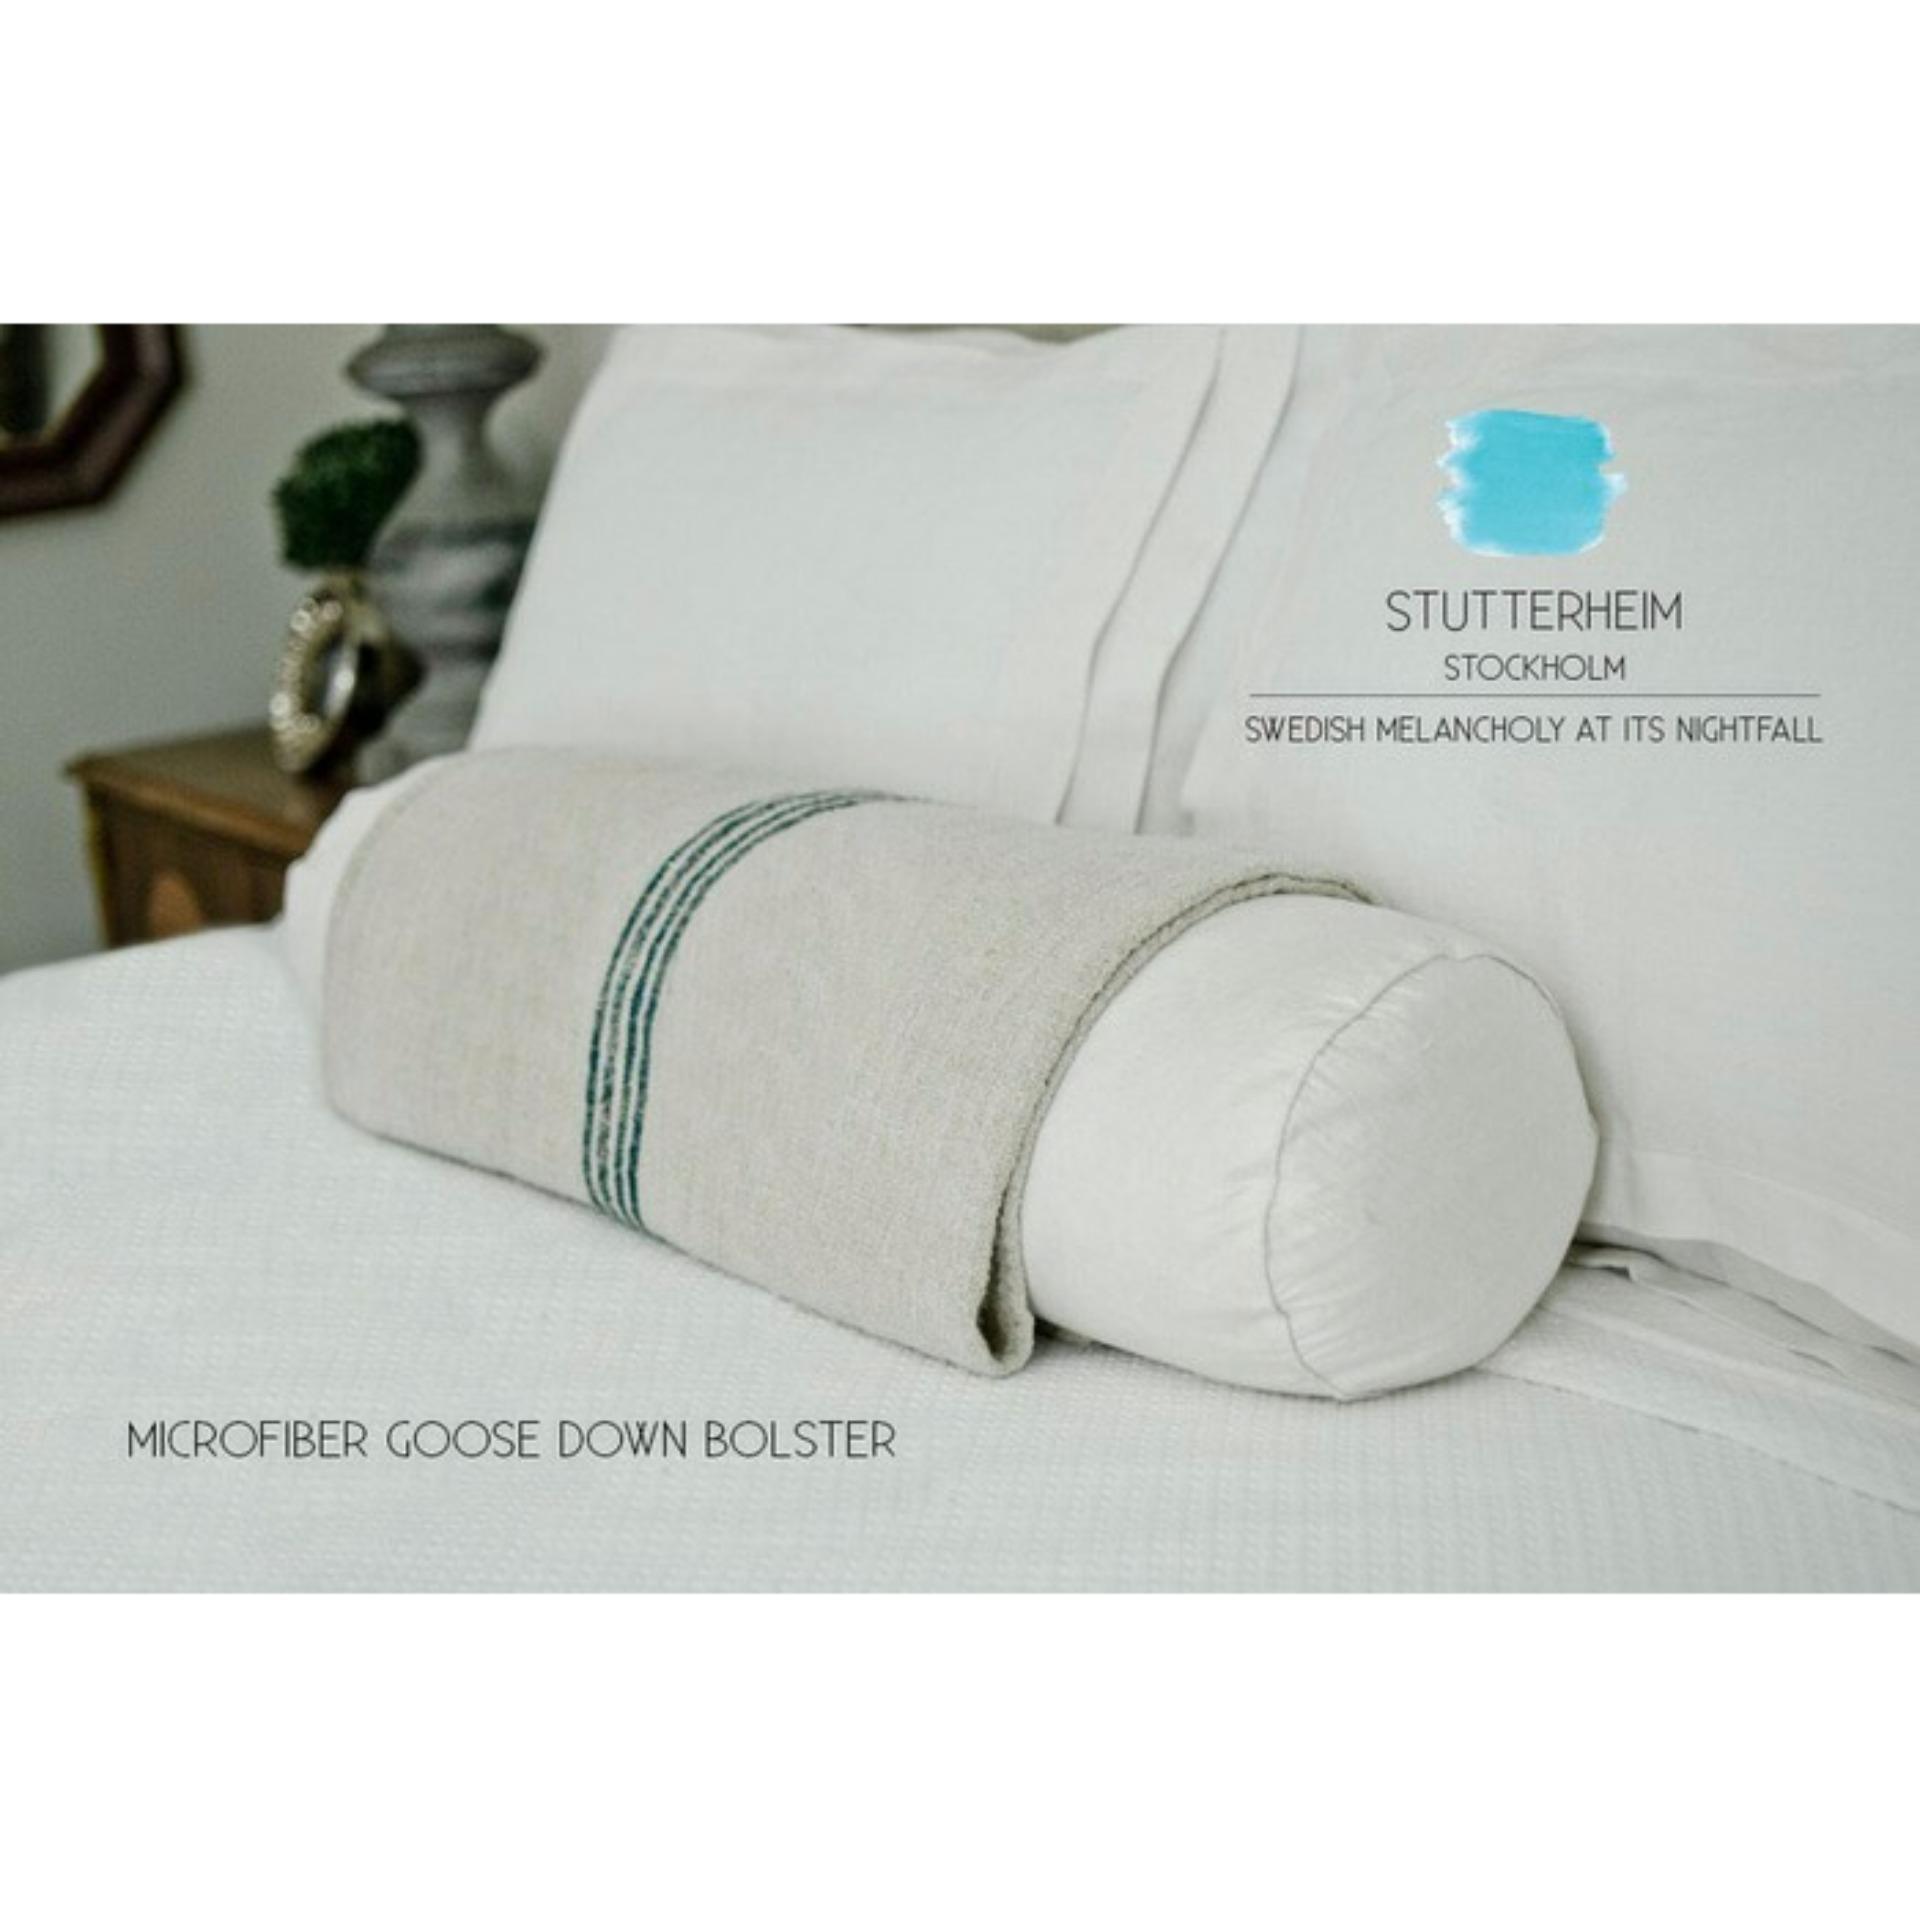 Stutterheim Guling Tidur Hotel Microfiber Bulu Angsa / Bolster Goose Down Made In Sweden